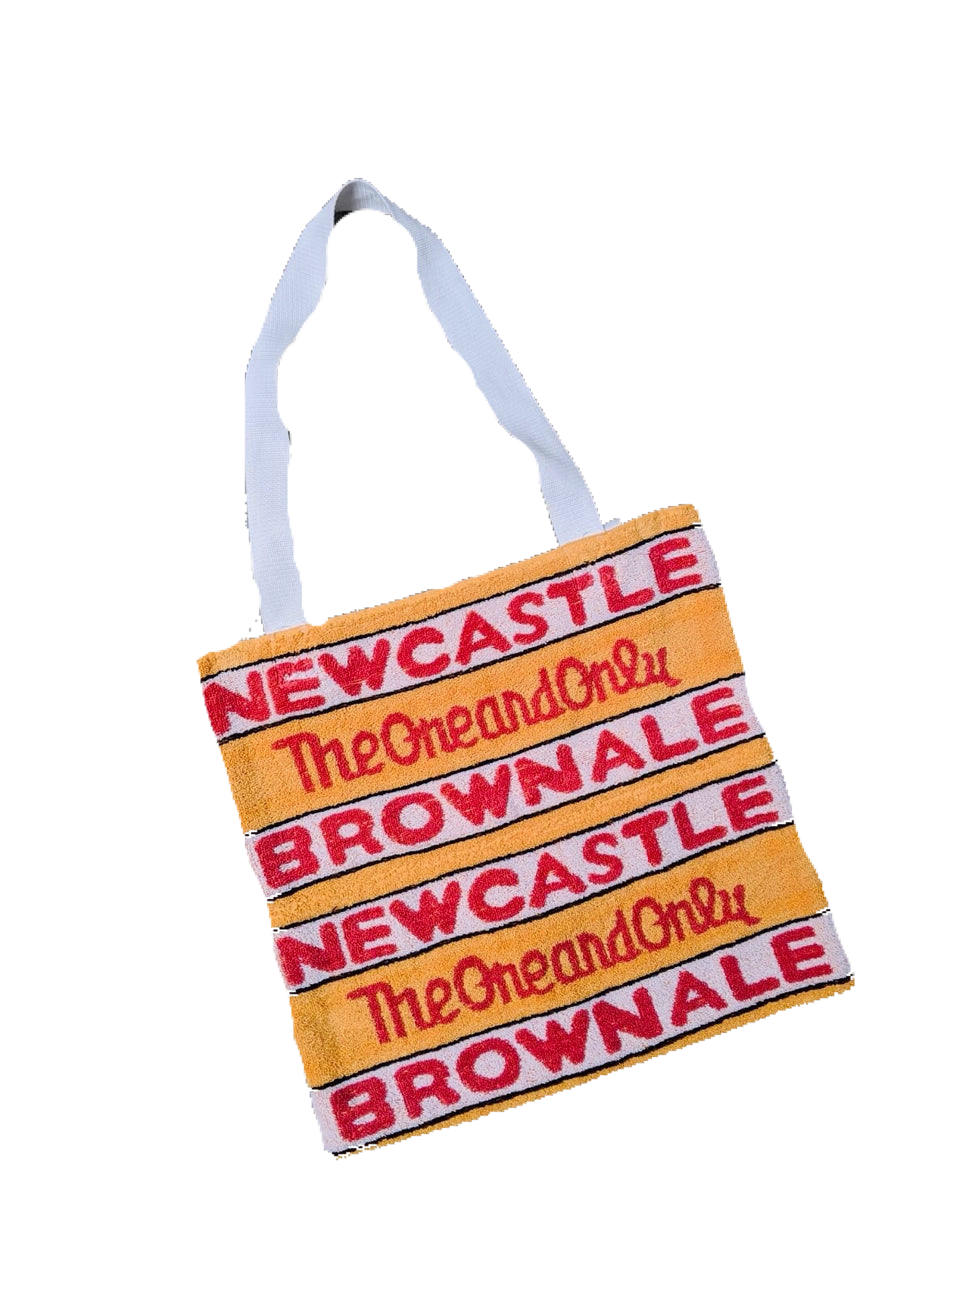 Newcastle Beer Towel Bag